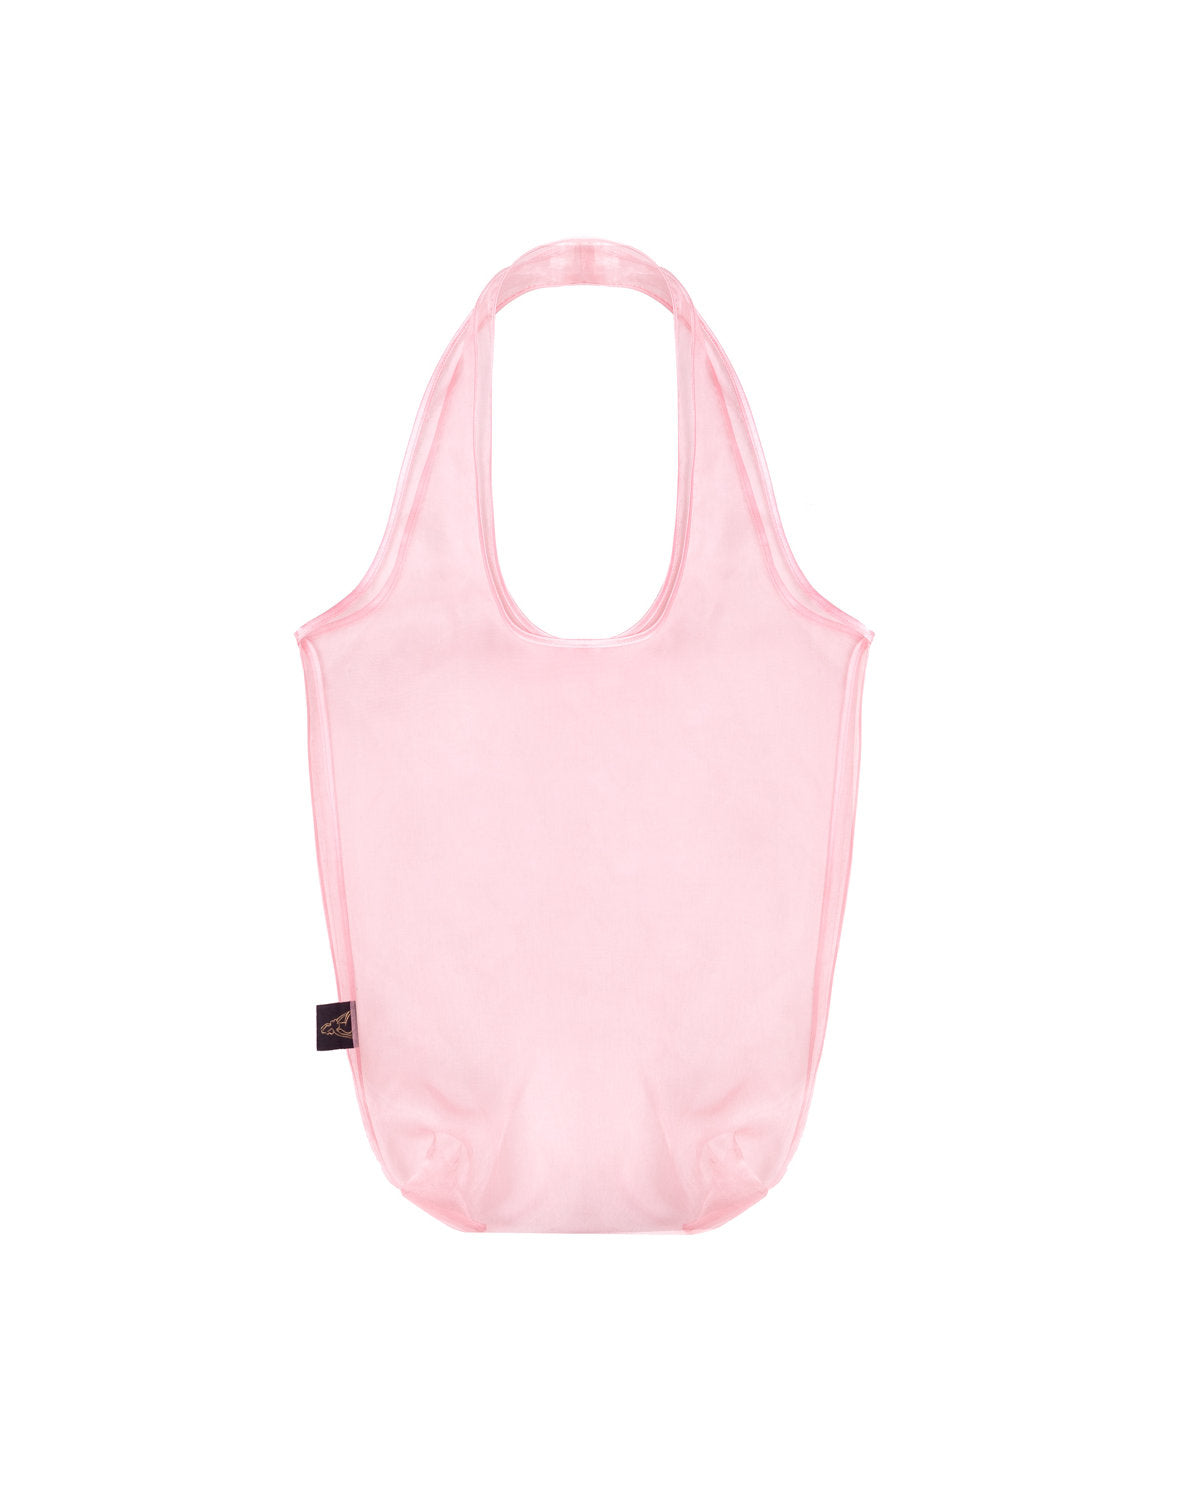 Shopper organza bag in pink